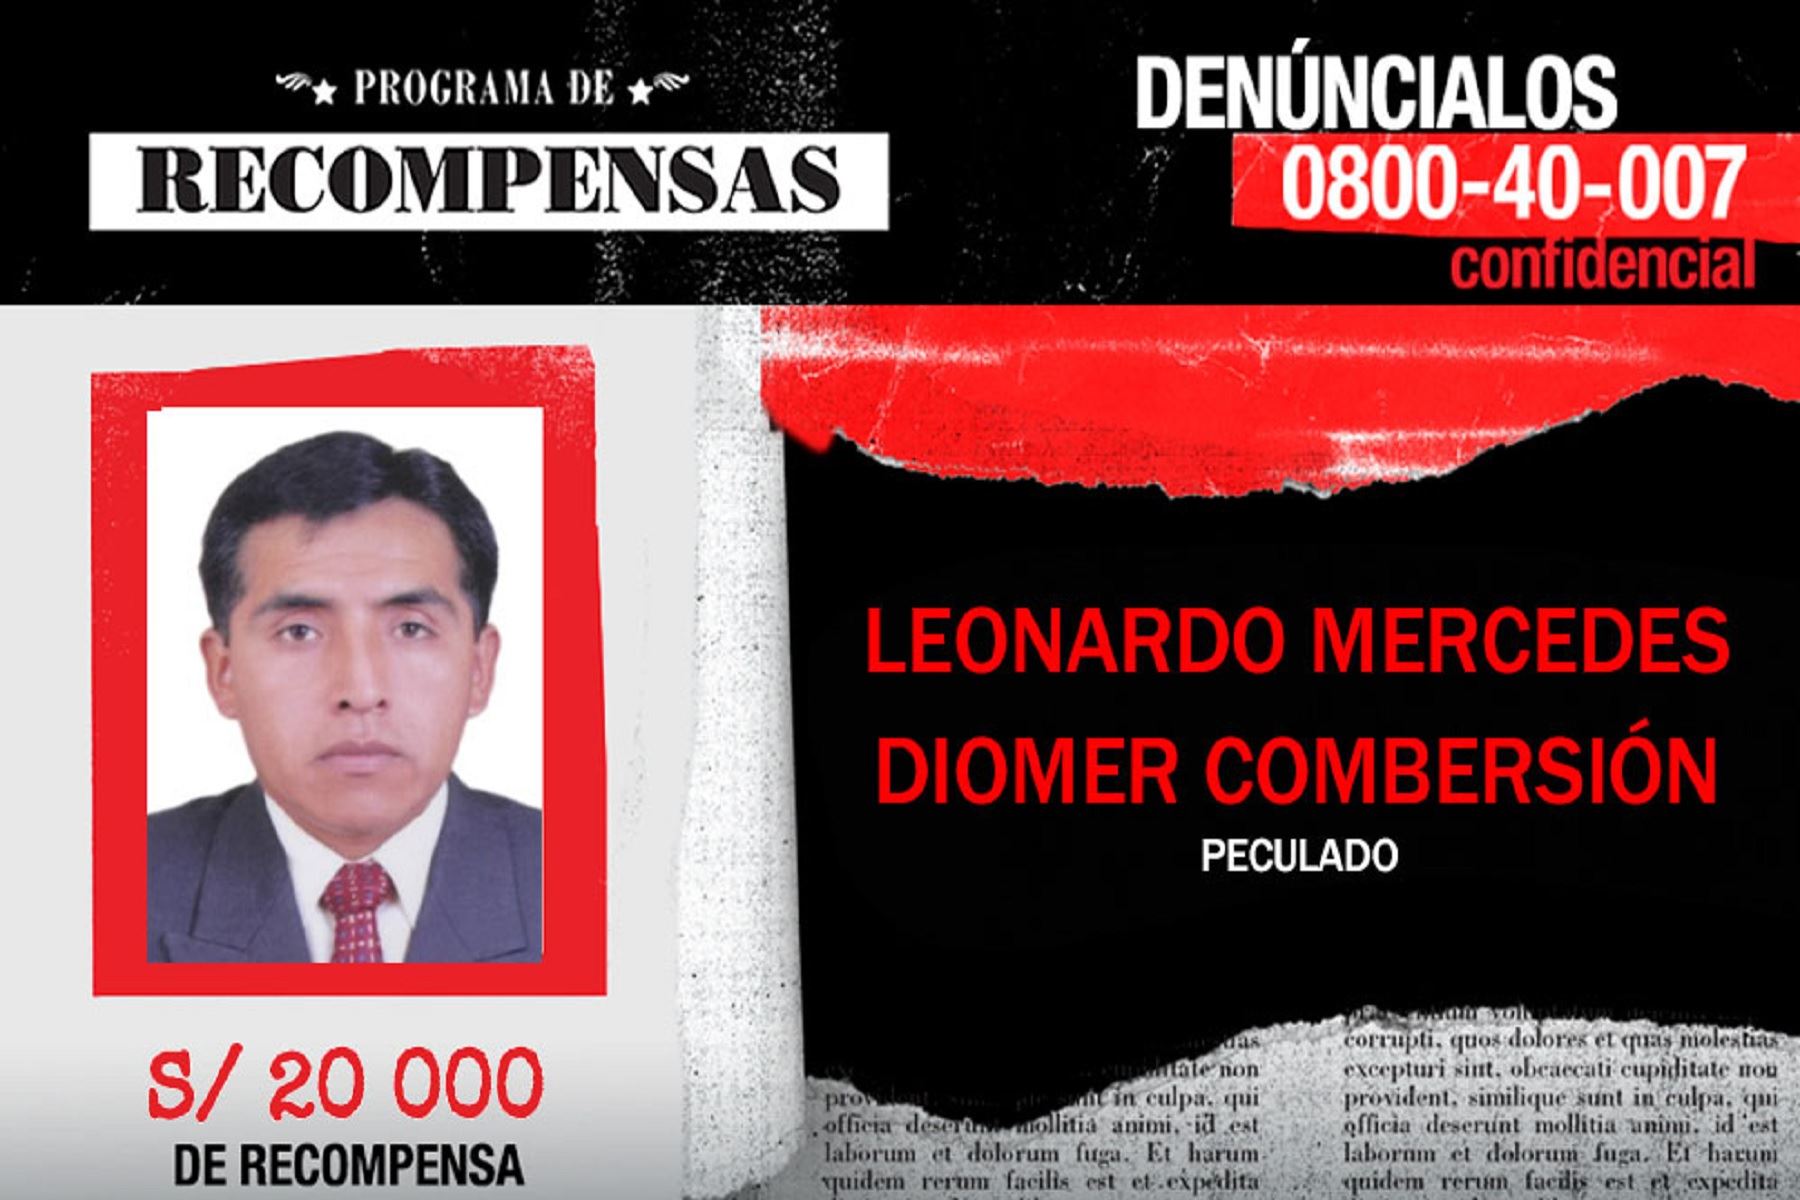 Capturado alcalde del distrito ancashino de San Cristóbal de Raján, en la provincia de Ocros, Diomer Leonardo Mercedes, requisitoriado por el delito de peculado, había sido incluido en el Programa de Recompensas.